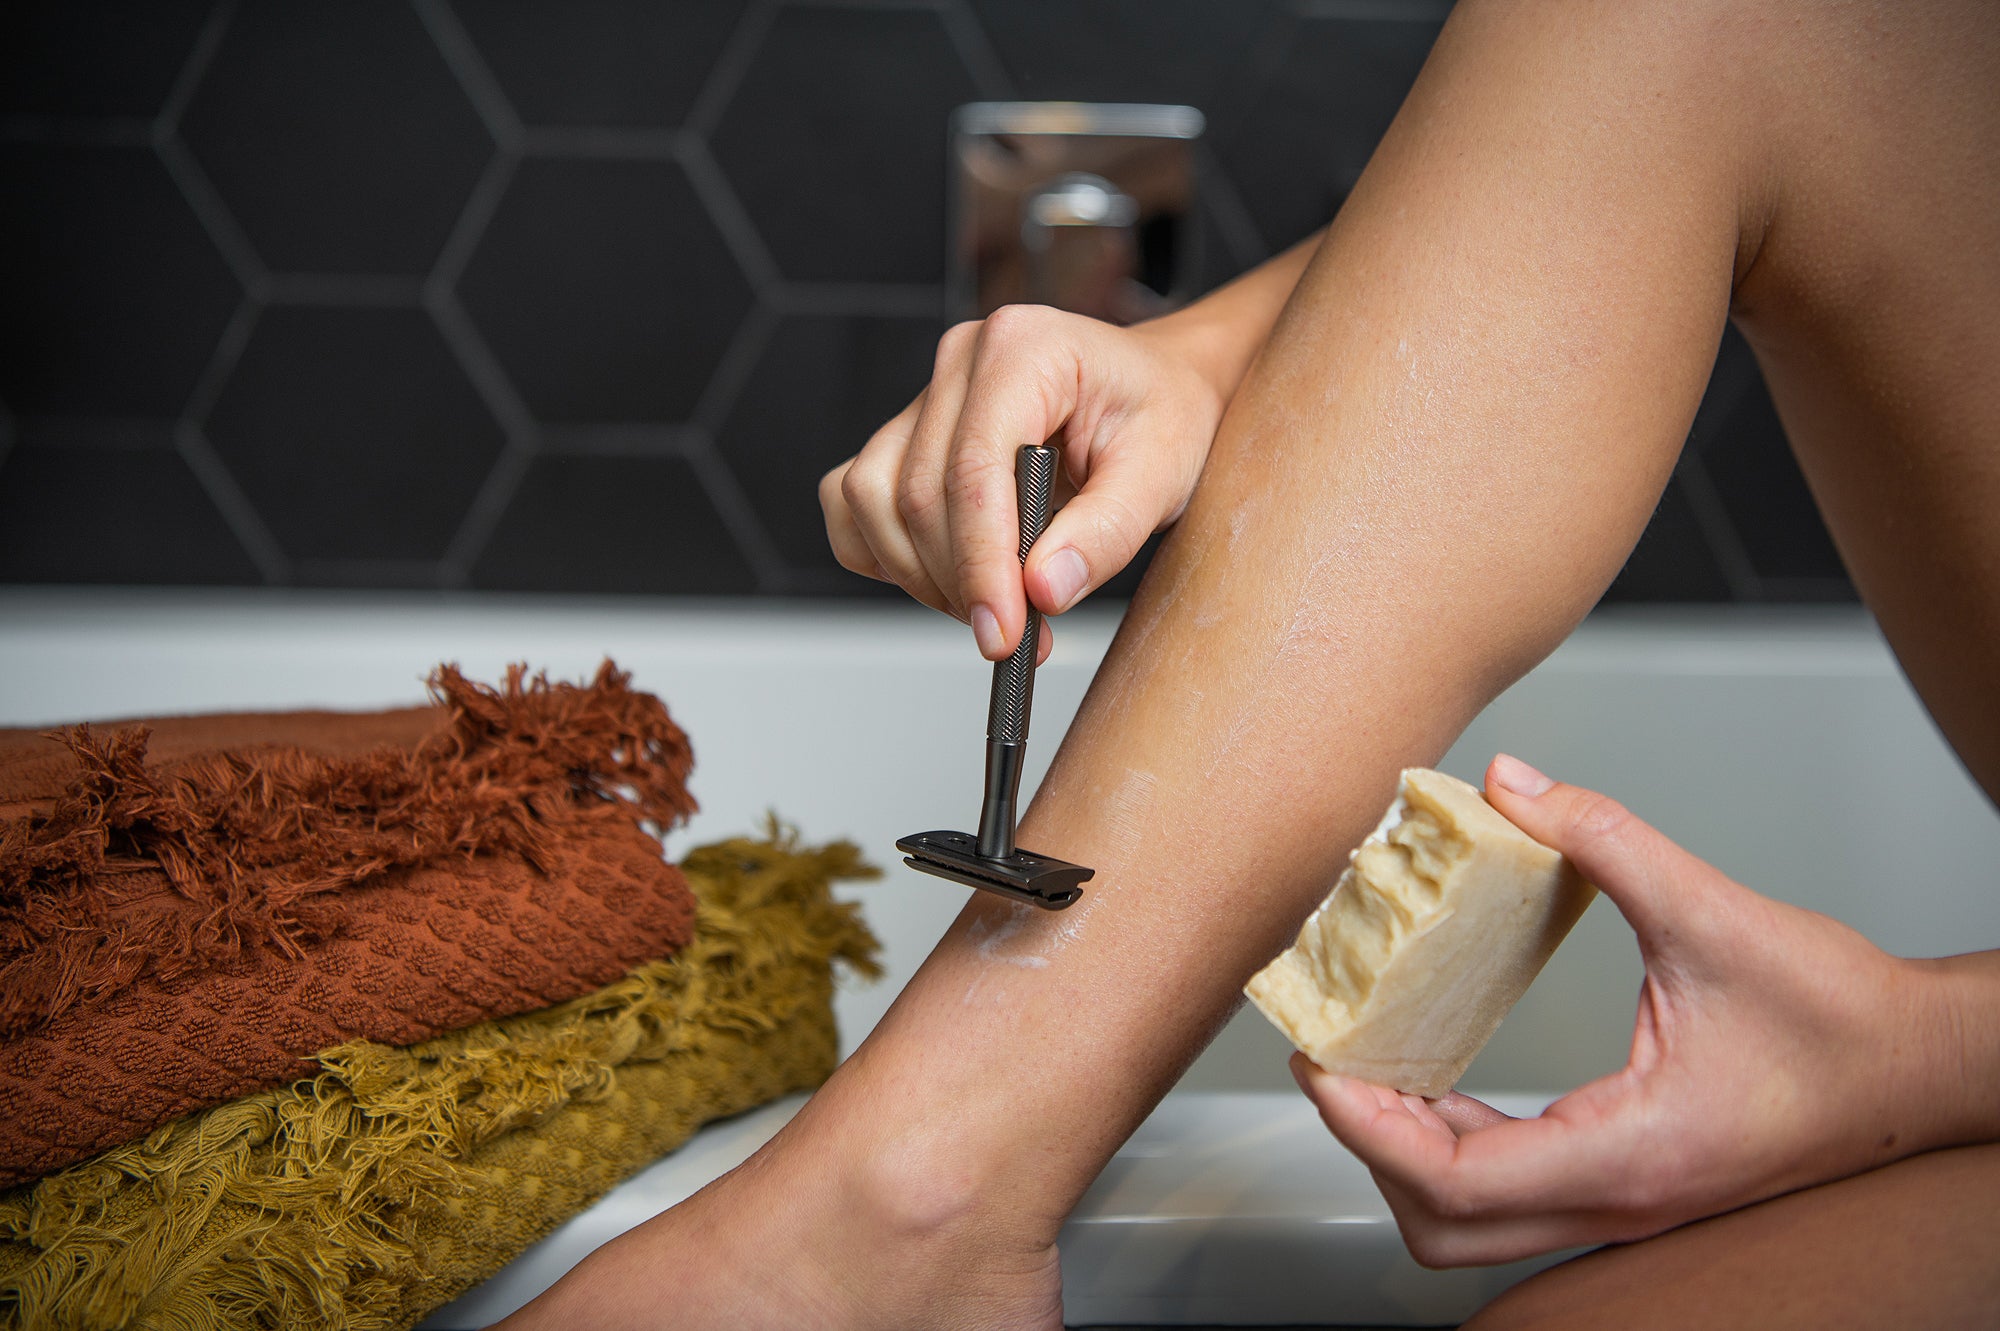 Slate Grey Safety Razor shaving a leg with zero waste Shaving Bar